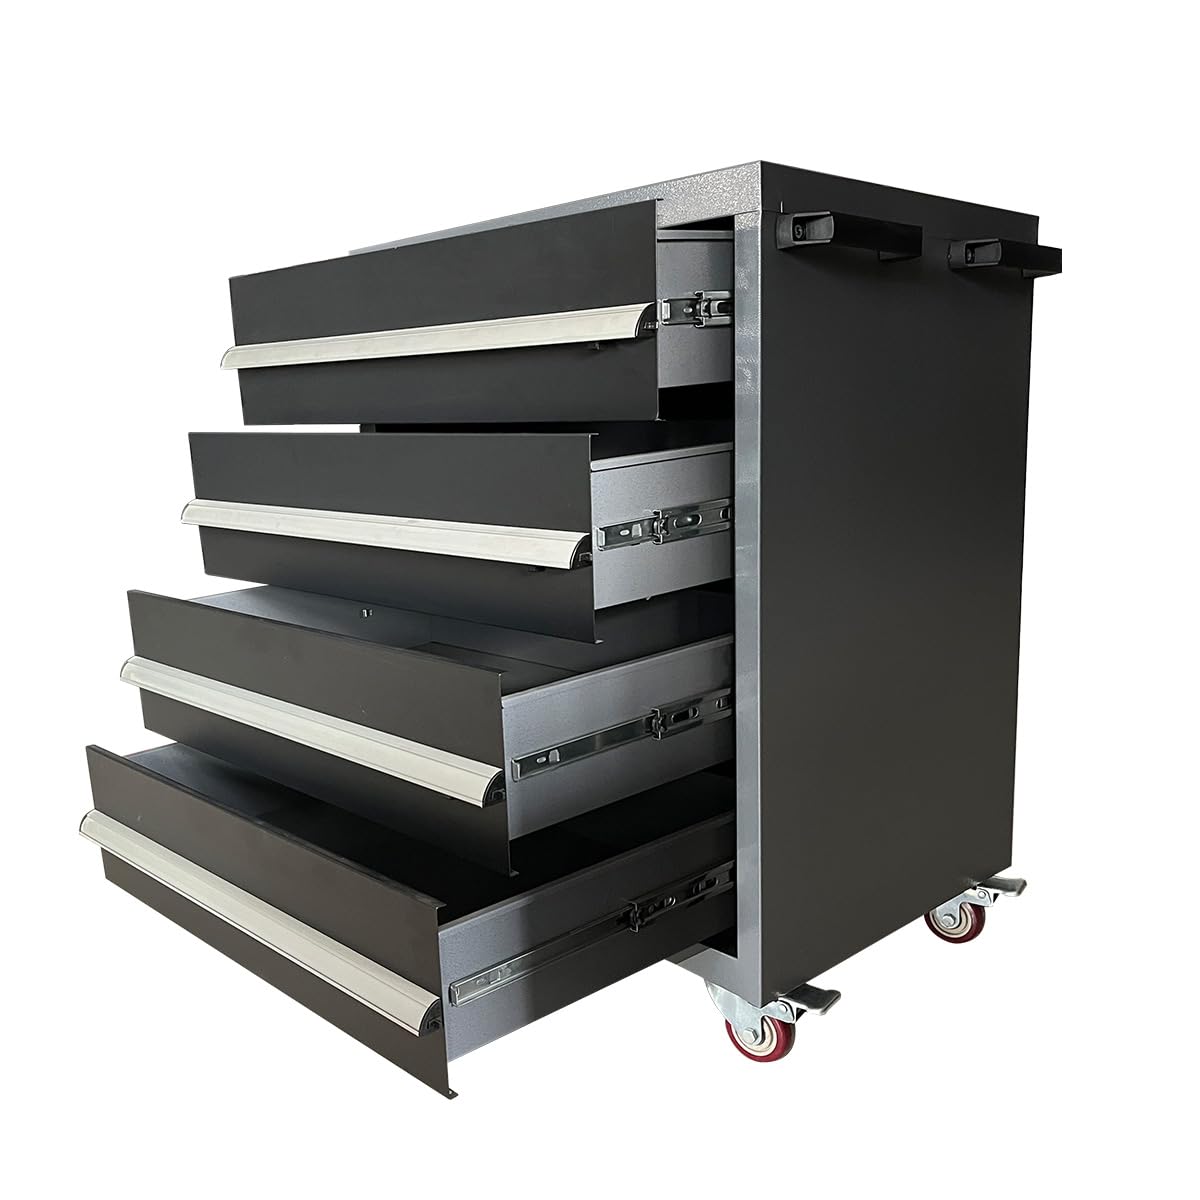 JZD Metal Garage Storage Cart with 4 Locking Drawers